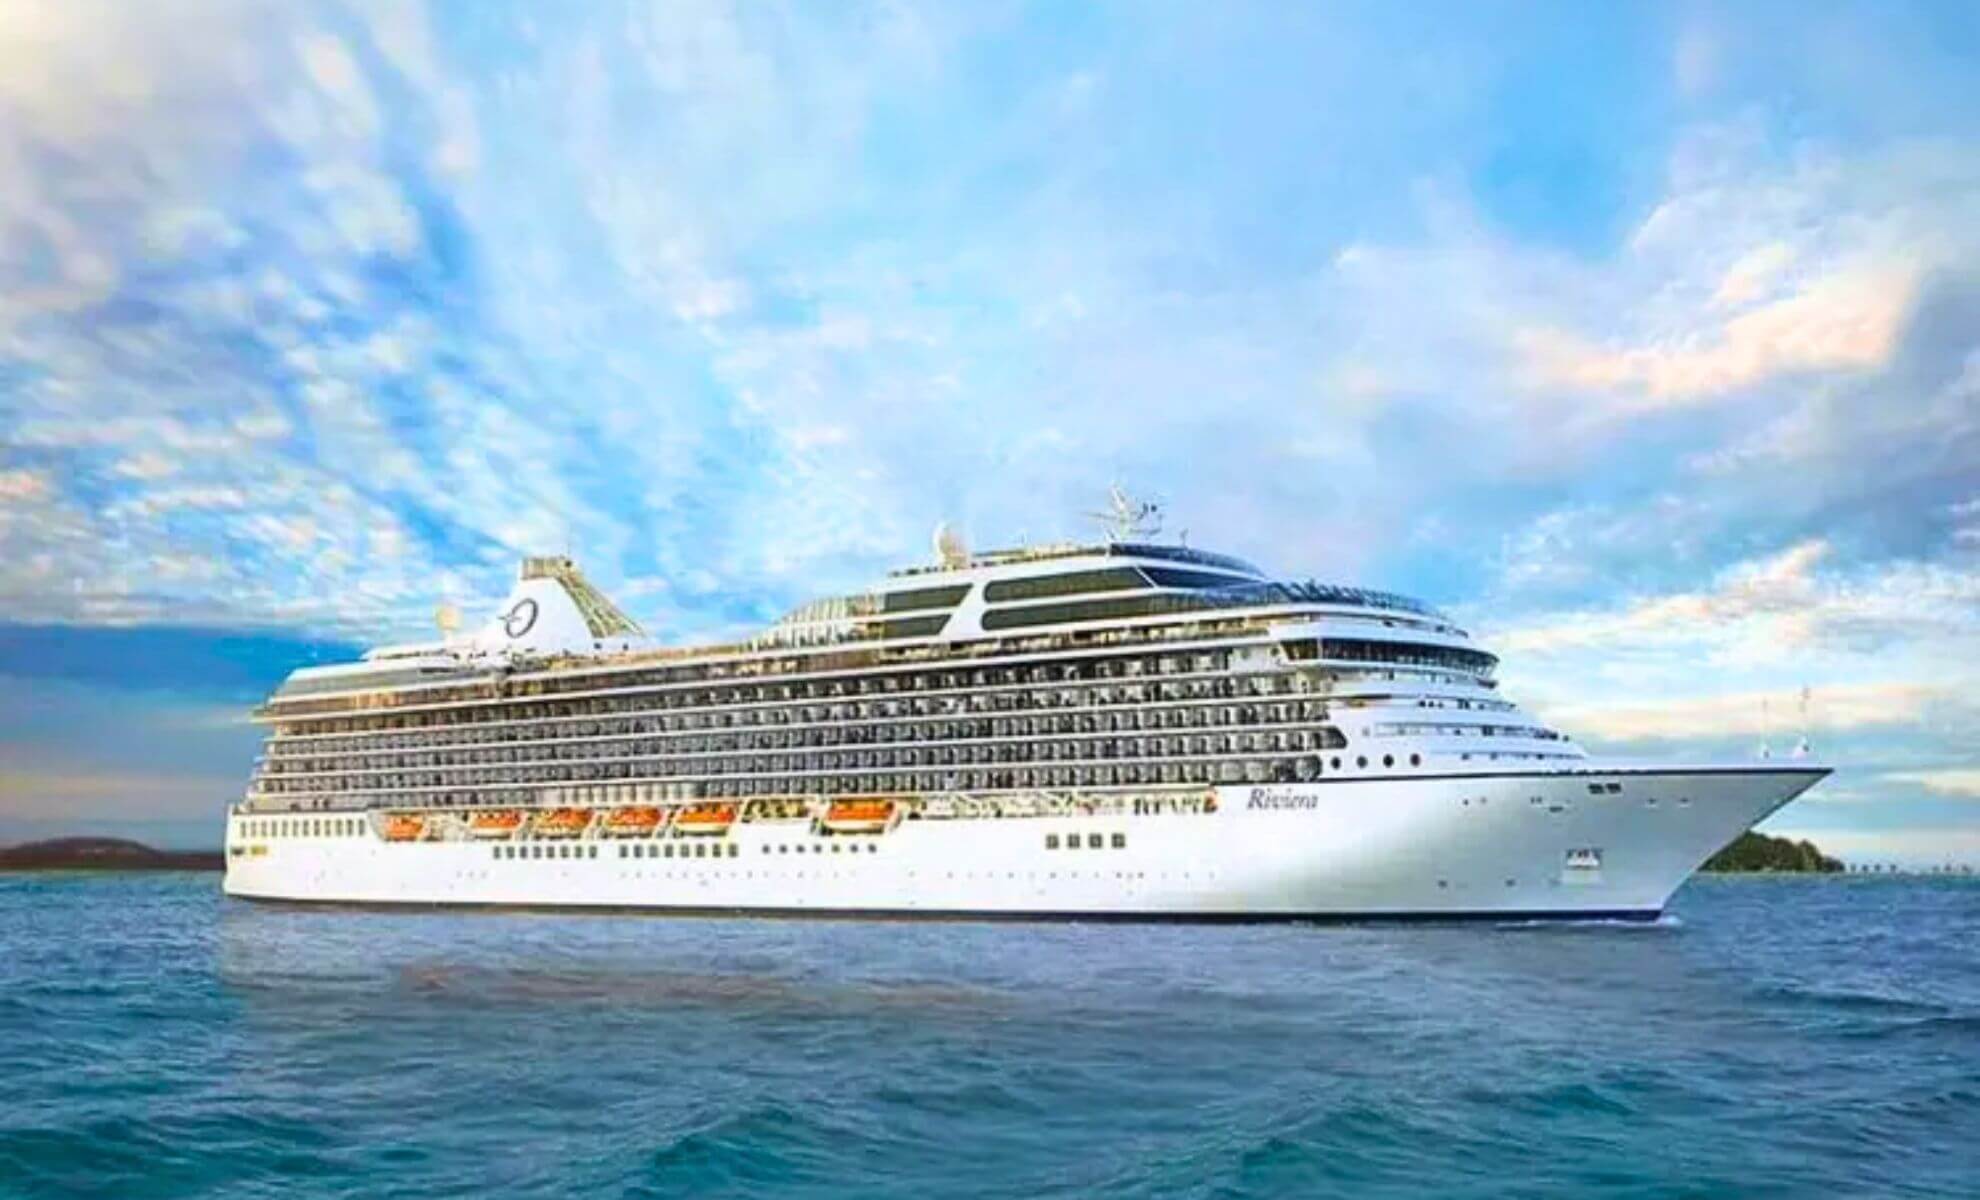 Oceania Vista — Oceania Cruises